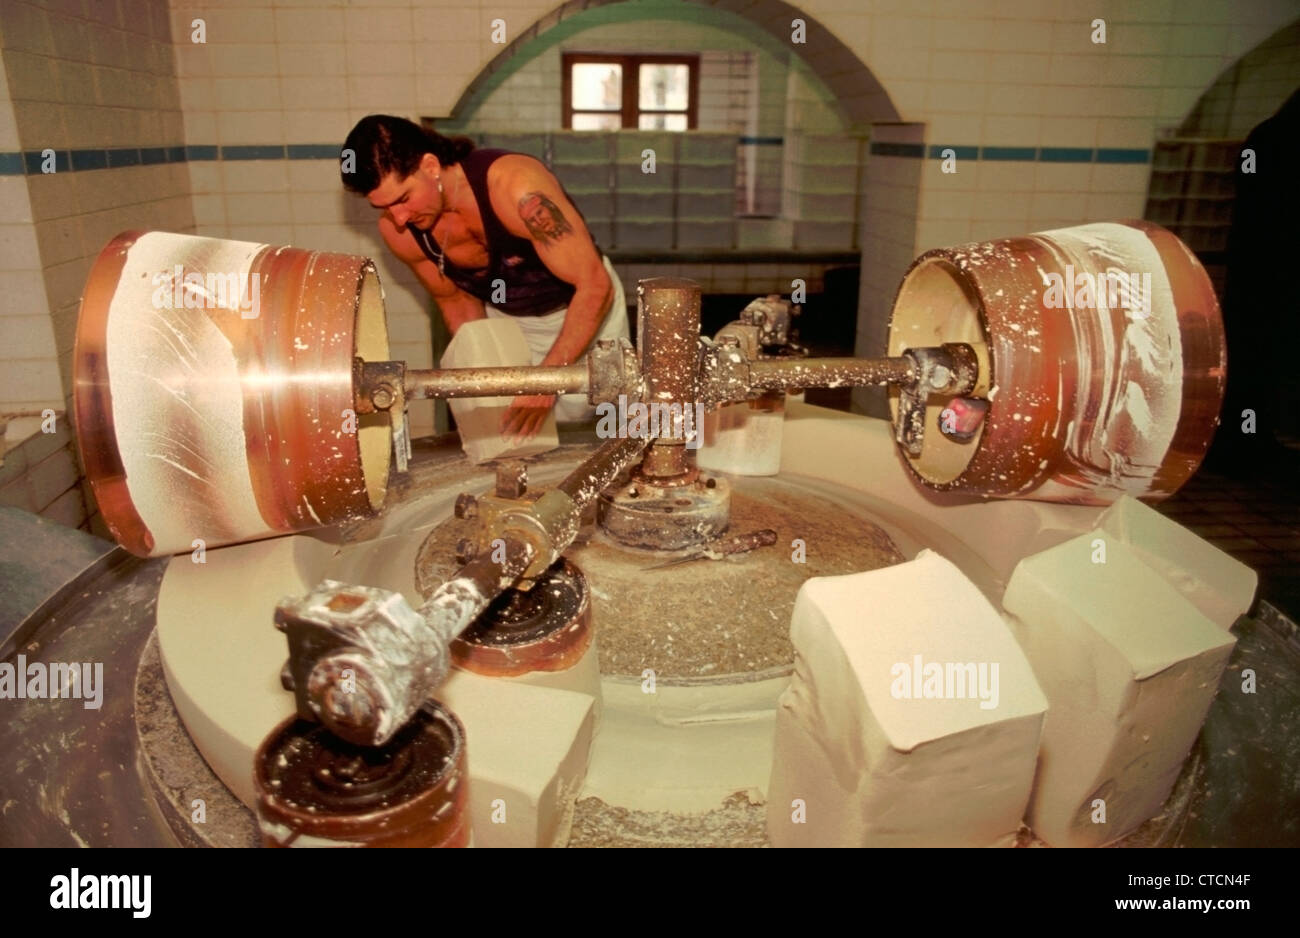 Mars 2004. Château Nymphenburg, Munich, Allemagne. Un travailleur de l'usine de porcelaine de blocs lourds ascenseurs porcelaine humide qui se roulent avant stockage et utilisés après quatre mois. Banque D'Images